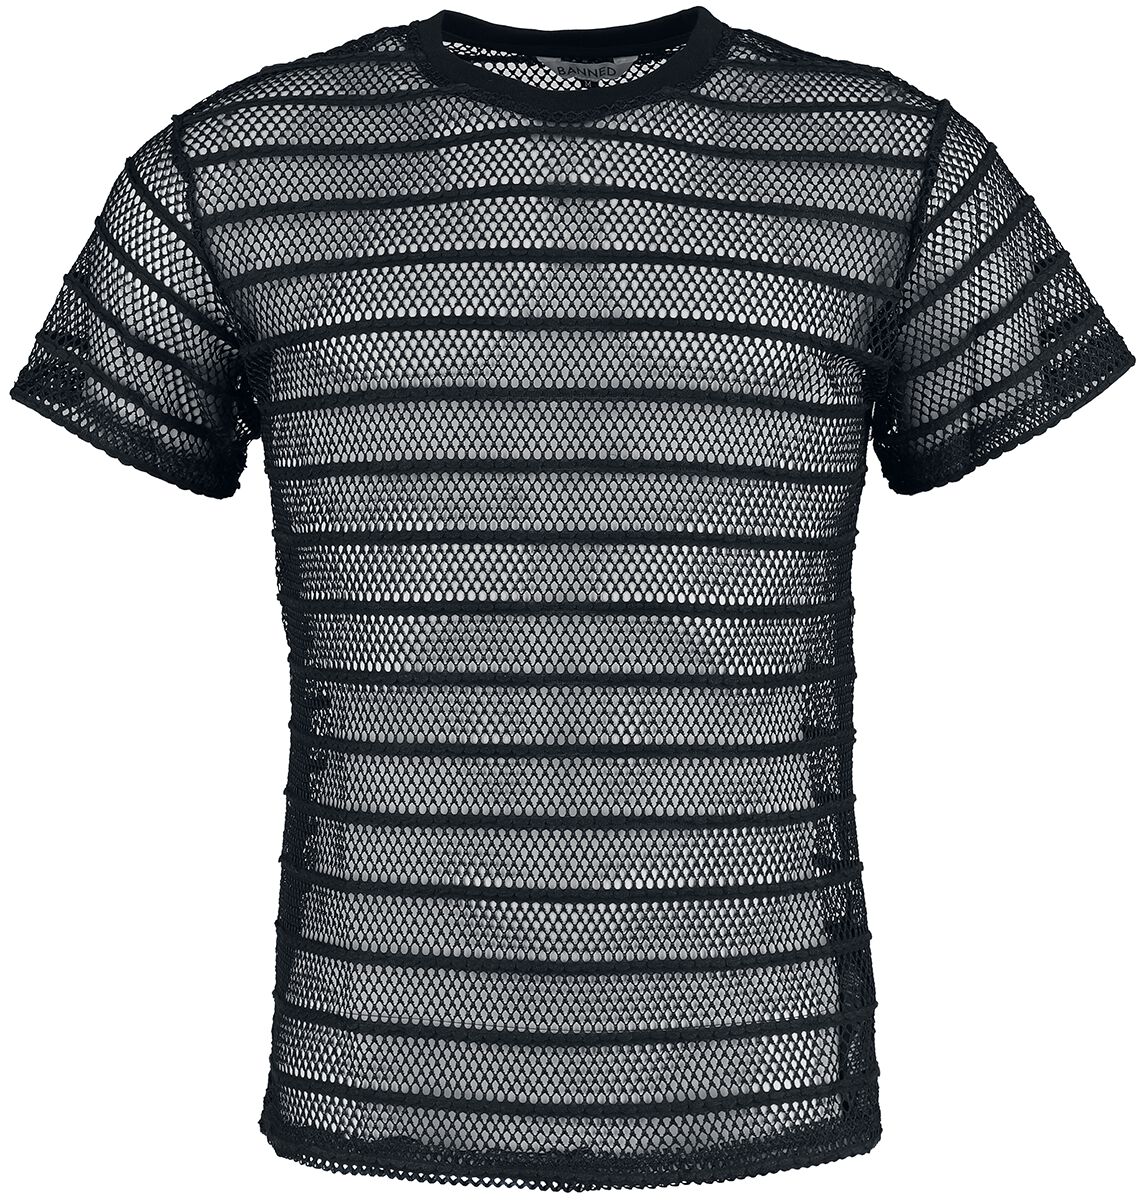 Banned Alternative - Gothic T-Shirt - Black Mesh Shirt - S bis XXL - für Männer - Größe L - schwarz